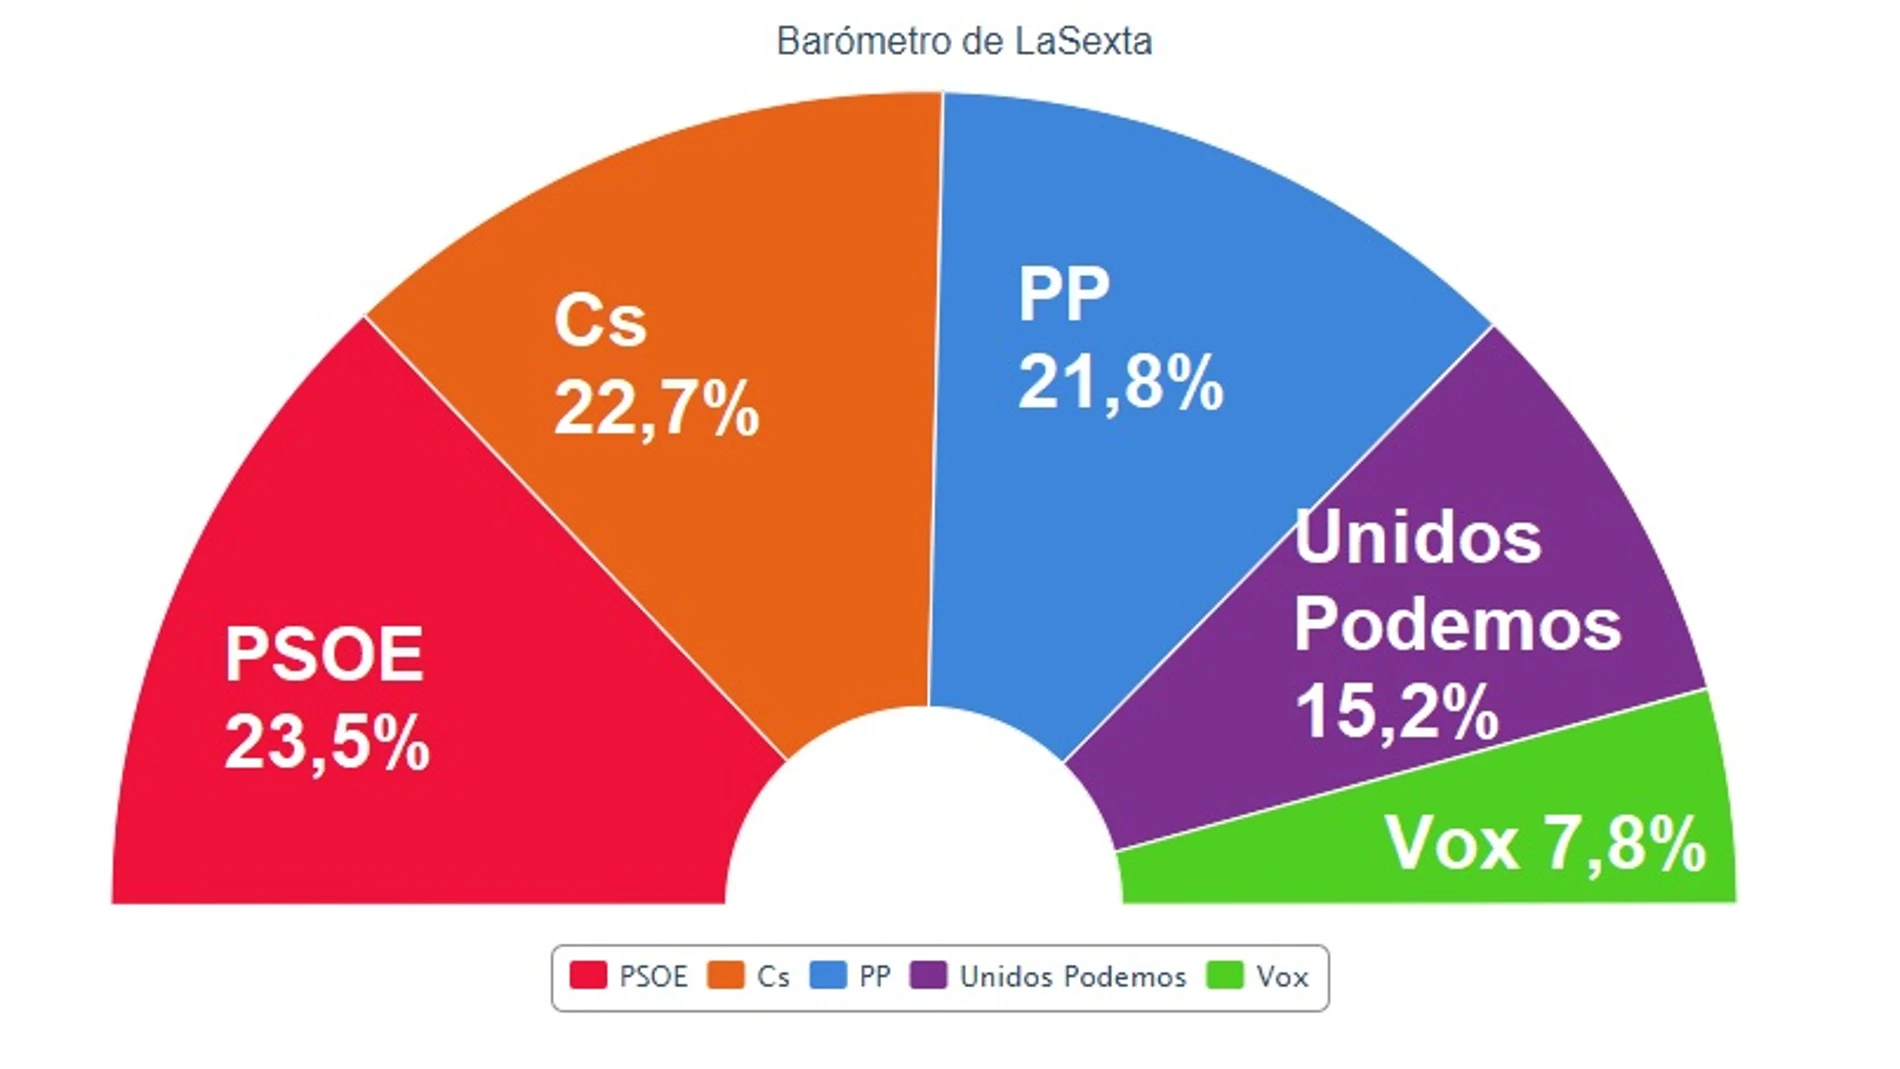 Encuesta electoral: El PSOE gana, Cs adelanta al PP y Vox entra con fuerza, según el barómetro de laSexta